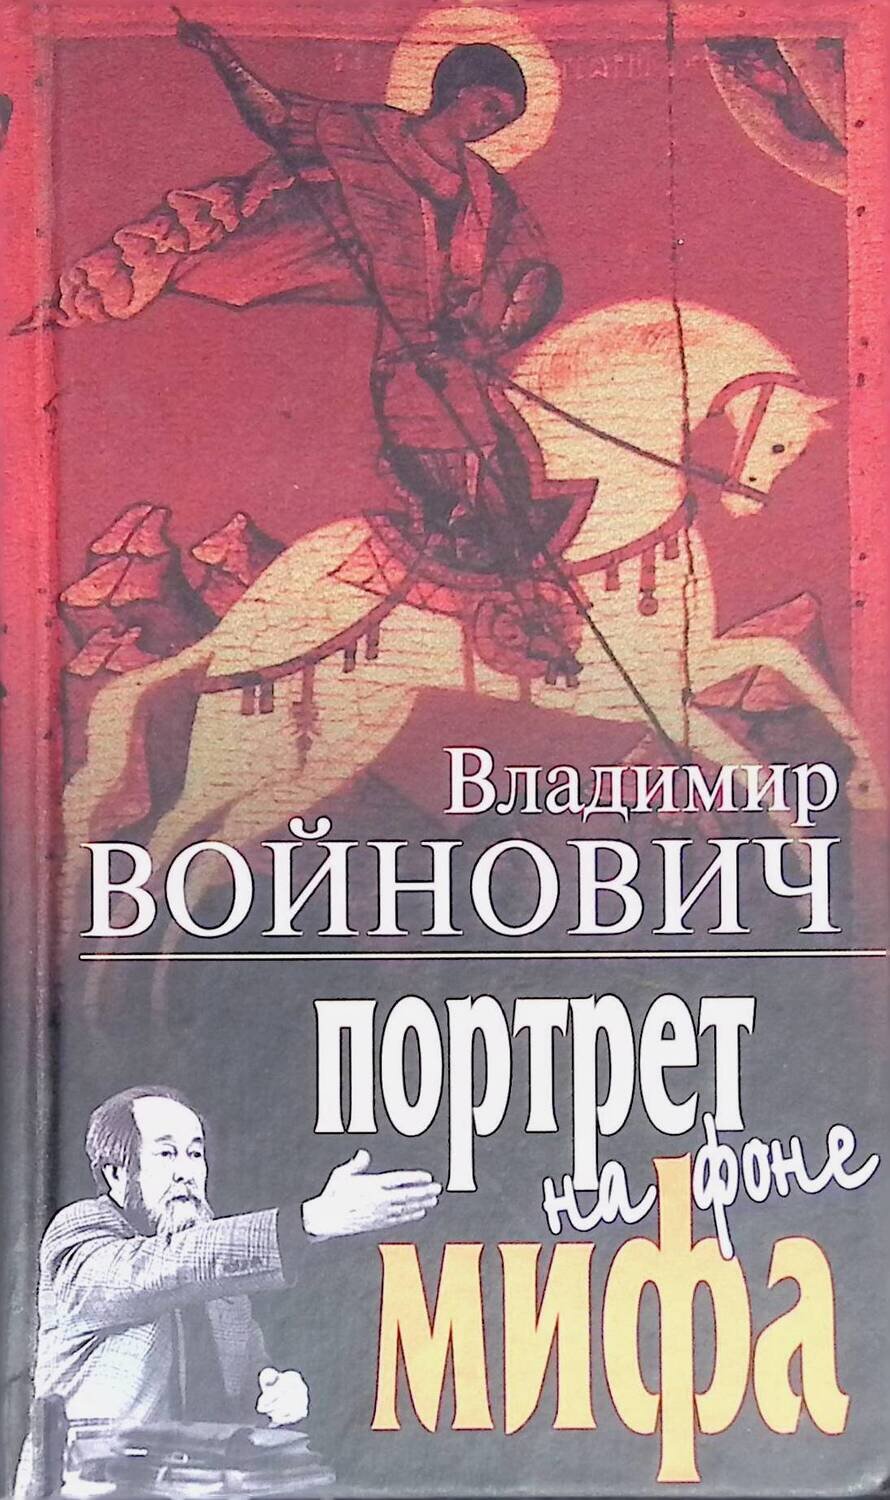 Портрет на фоне мифа; Войнович Владимир Николаевич